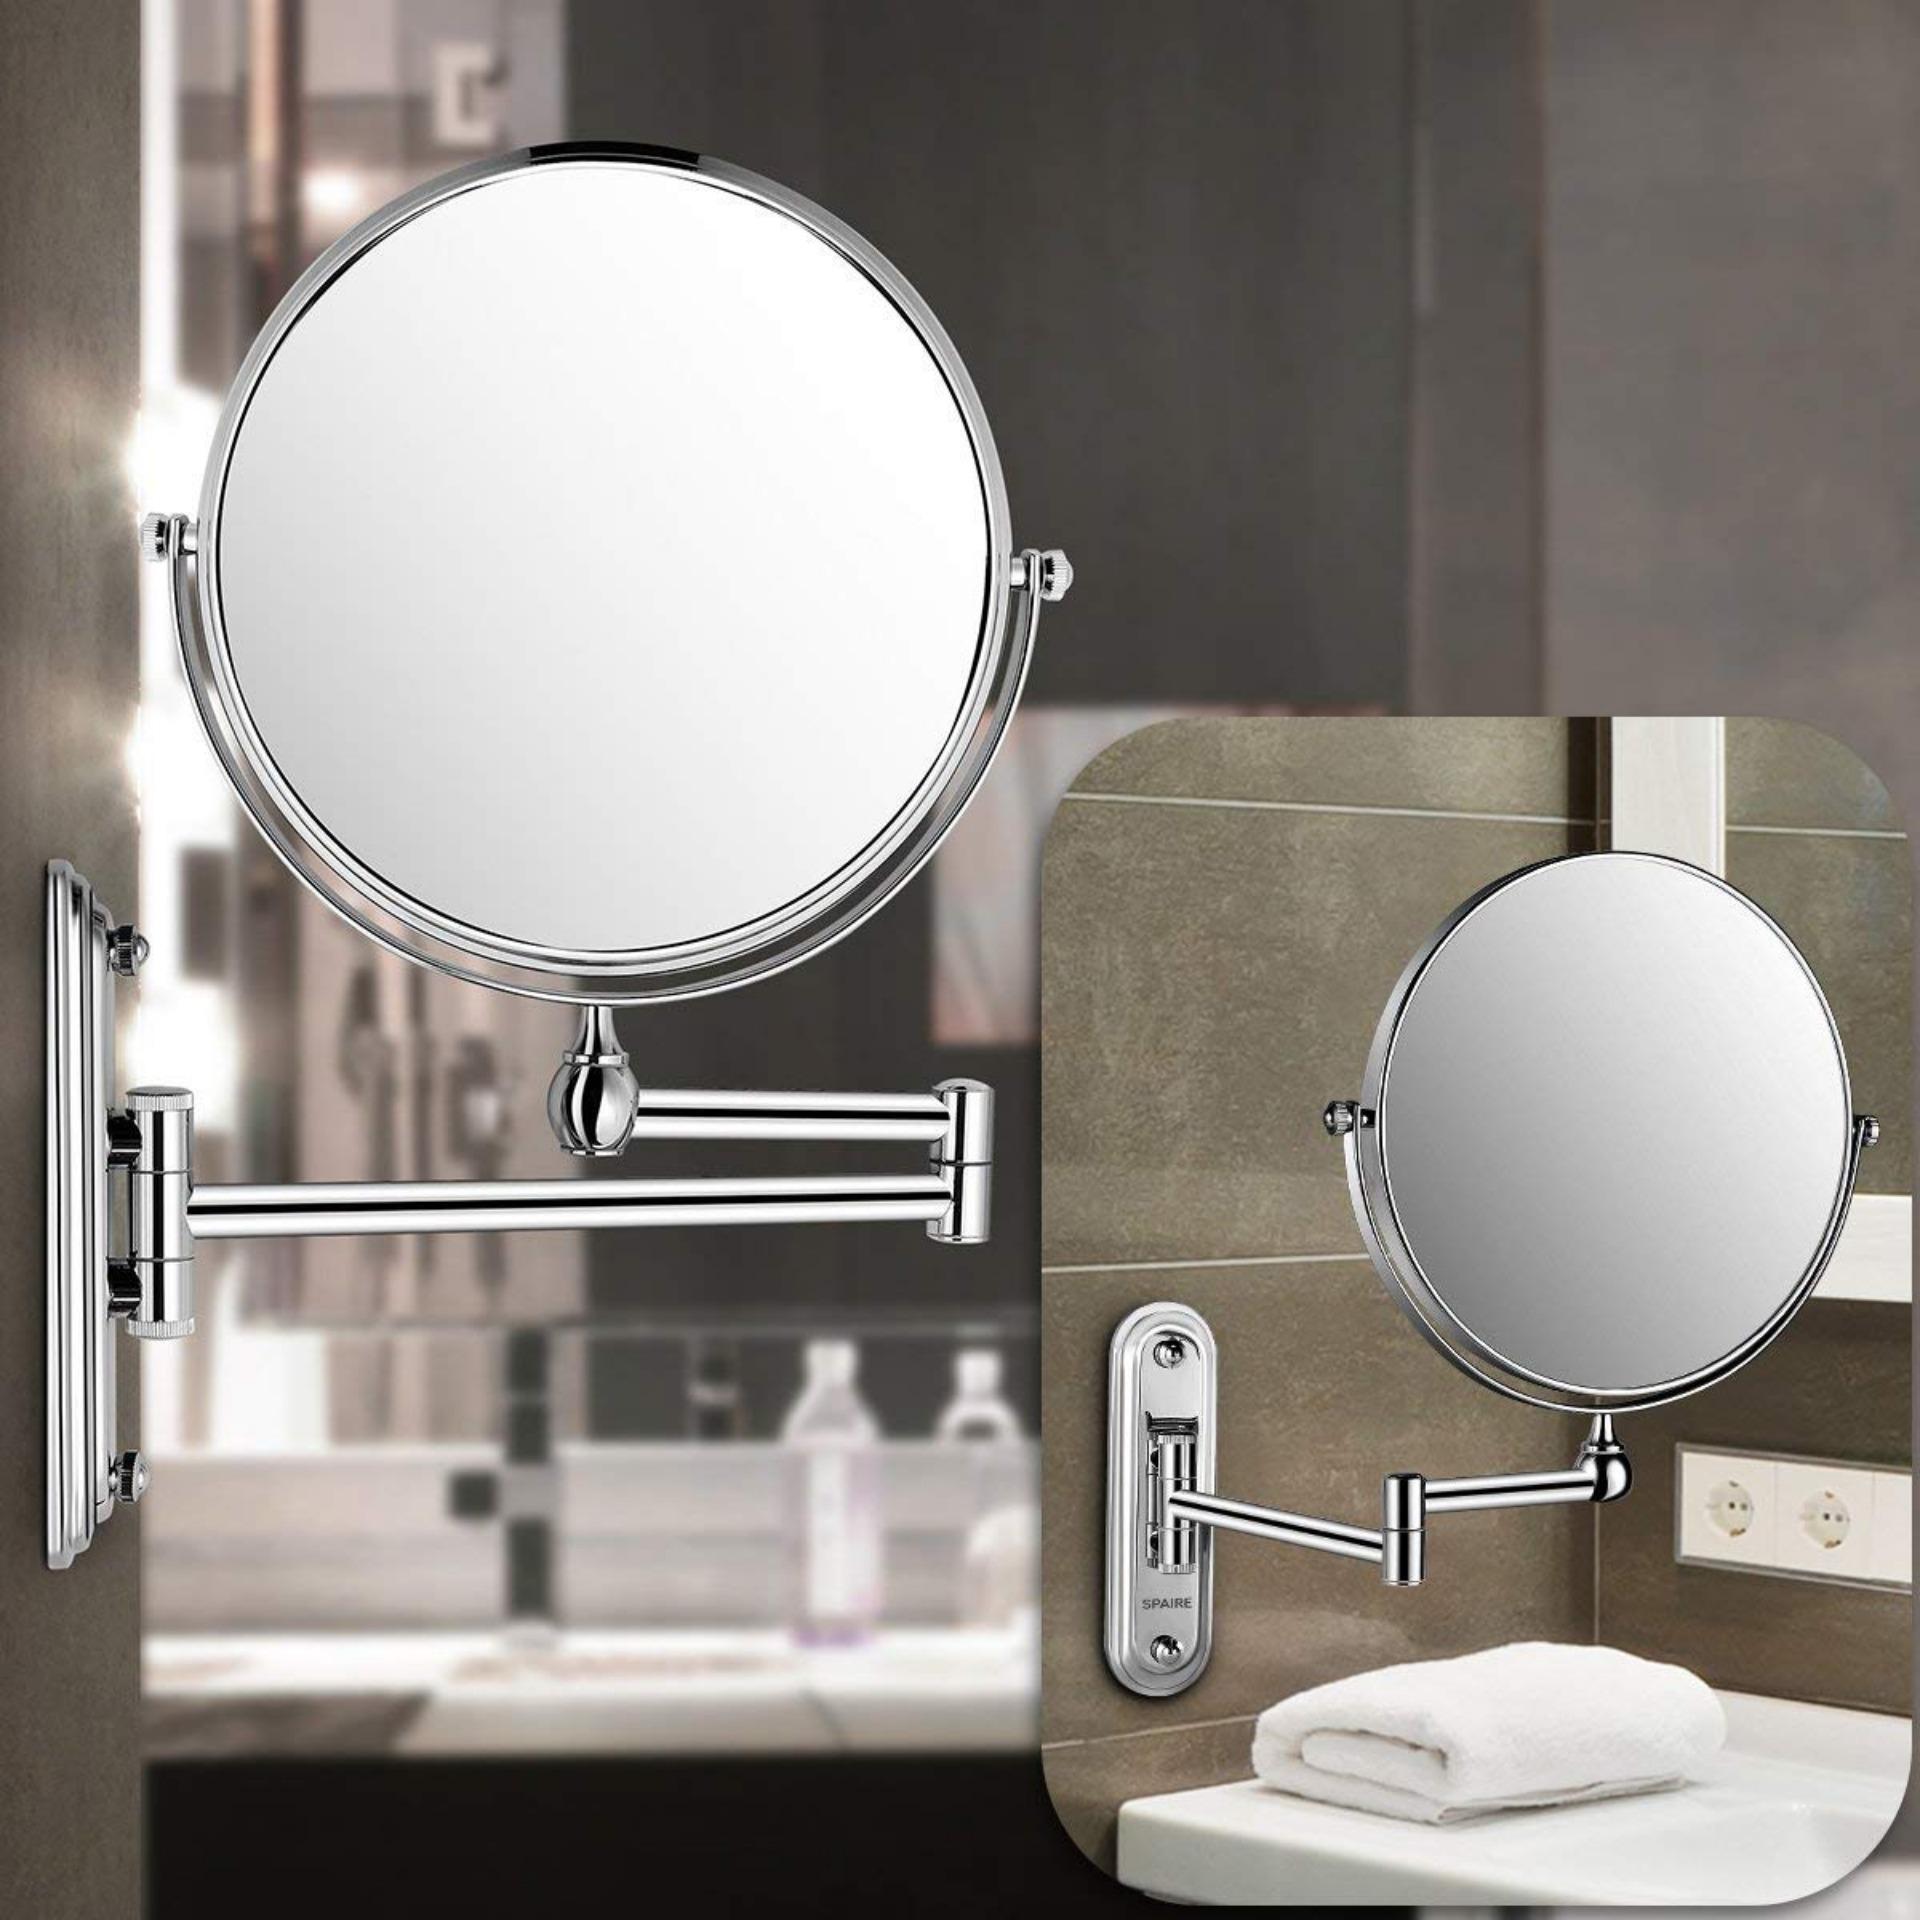 Gương phòng tắm treo tường - Gương trang điểm treo tường 2 mặt - chất liệu không gỉ